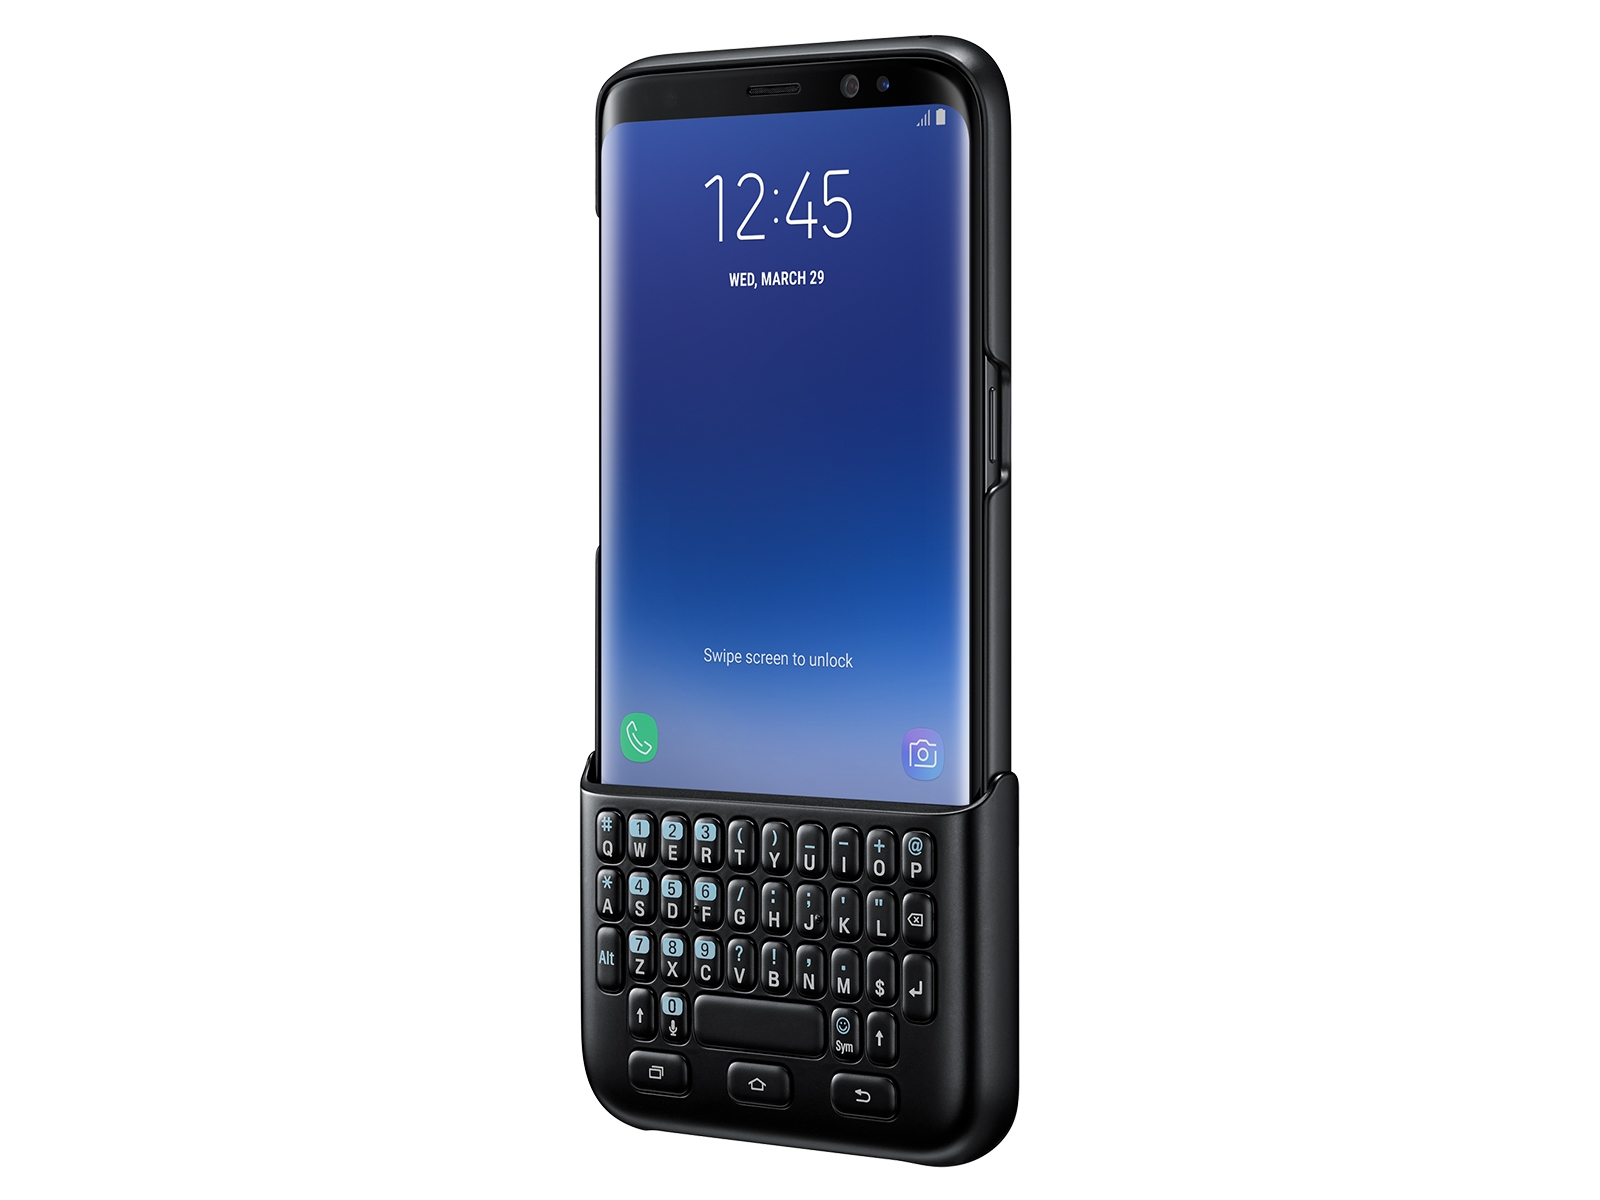 Galaxy S8 Keyboard Cover, Mobile Accessories EJ-CG950BBEGWW | Samsung